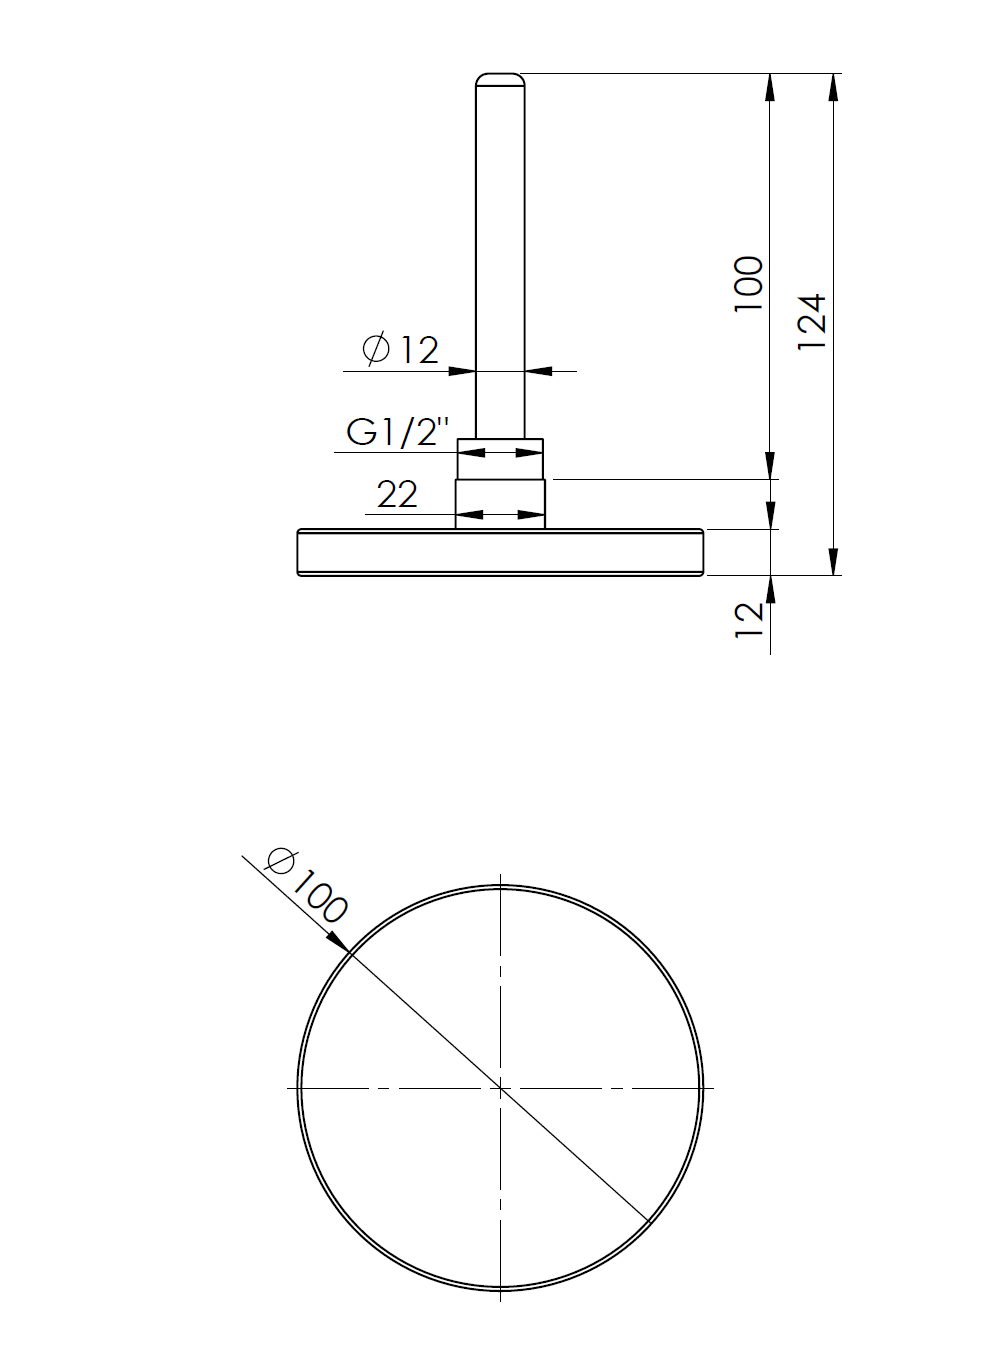 63871 Termometr bimetaliczny BiTh 100, fi100 mm, 0÷60°C, L 100 mm, G1/2", ax, kl. 2 - wymiary AFRISO 1